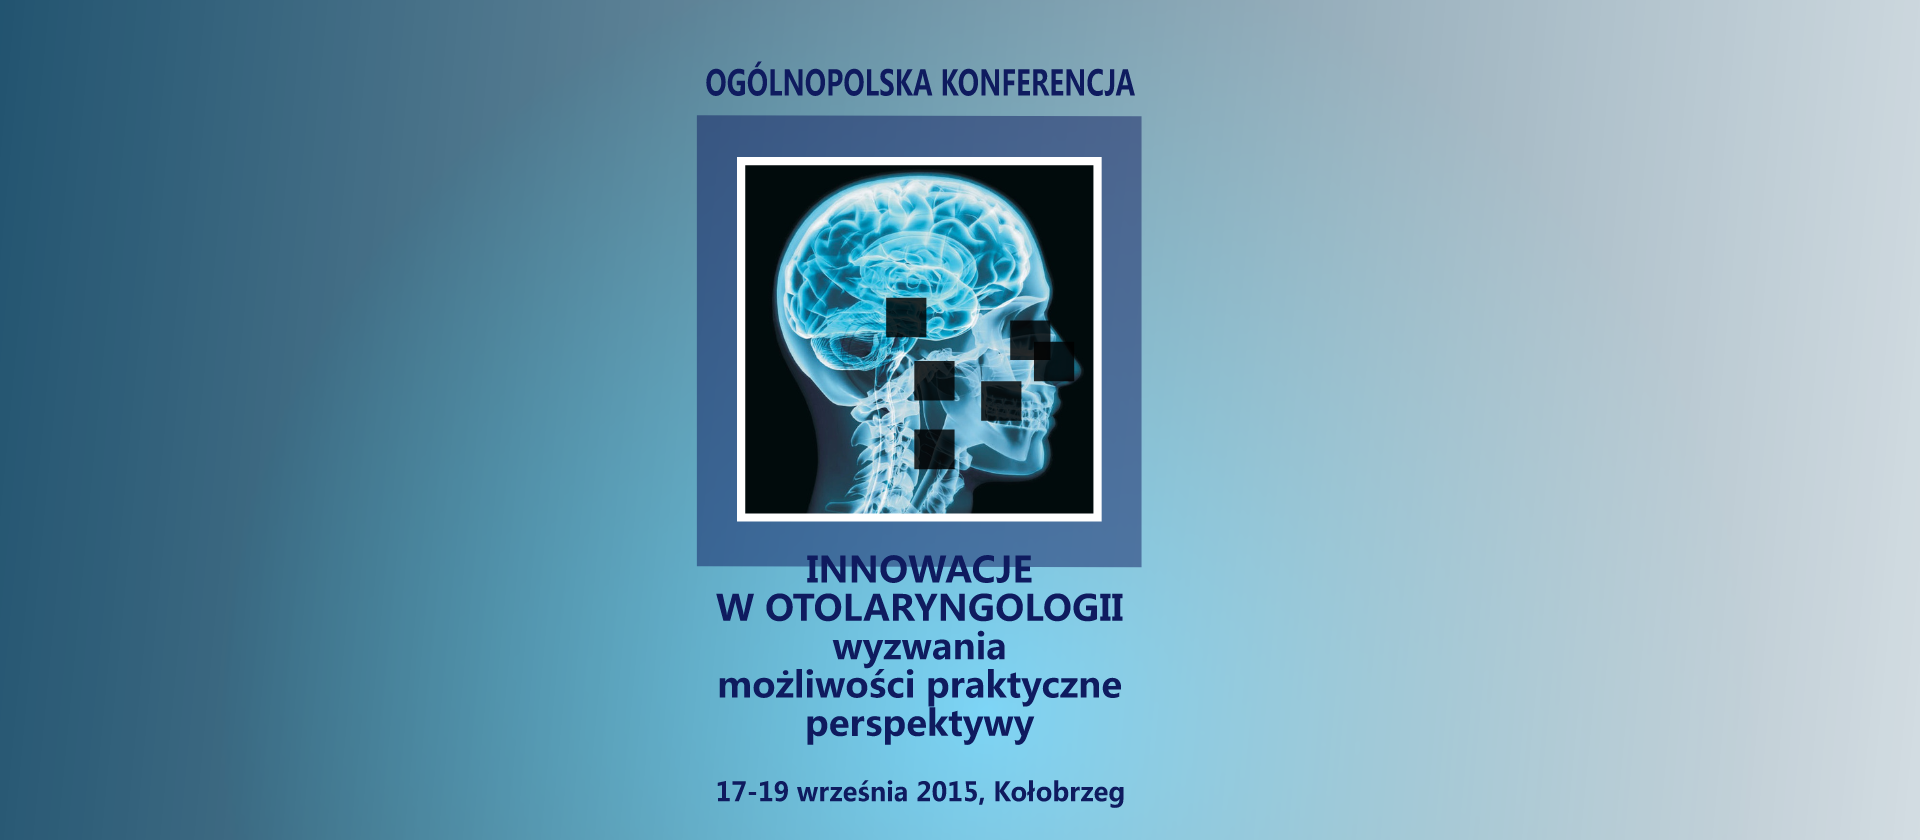 Ogólnopolska Konferencja „Innowacje w otolaryngologii”